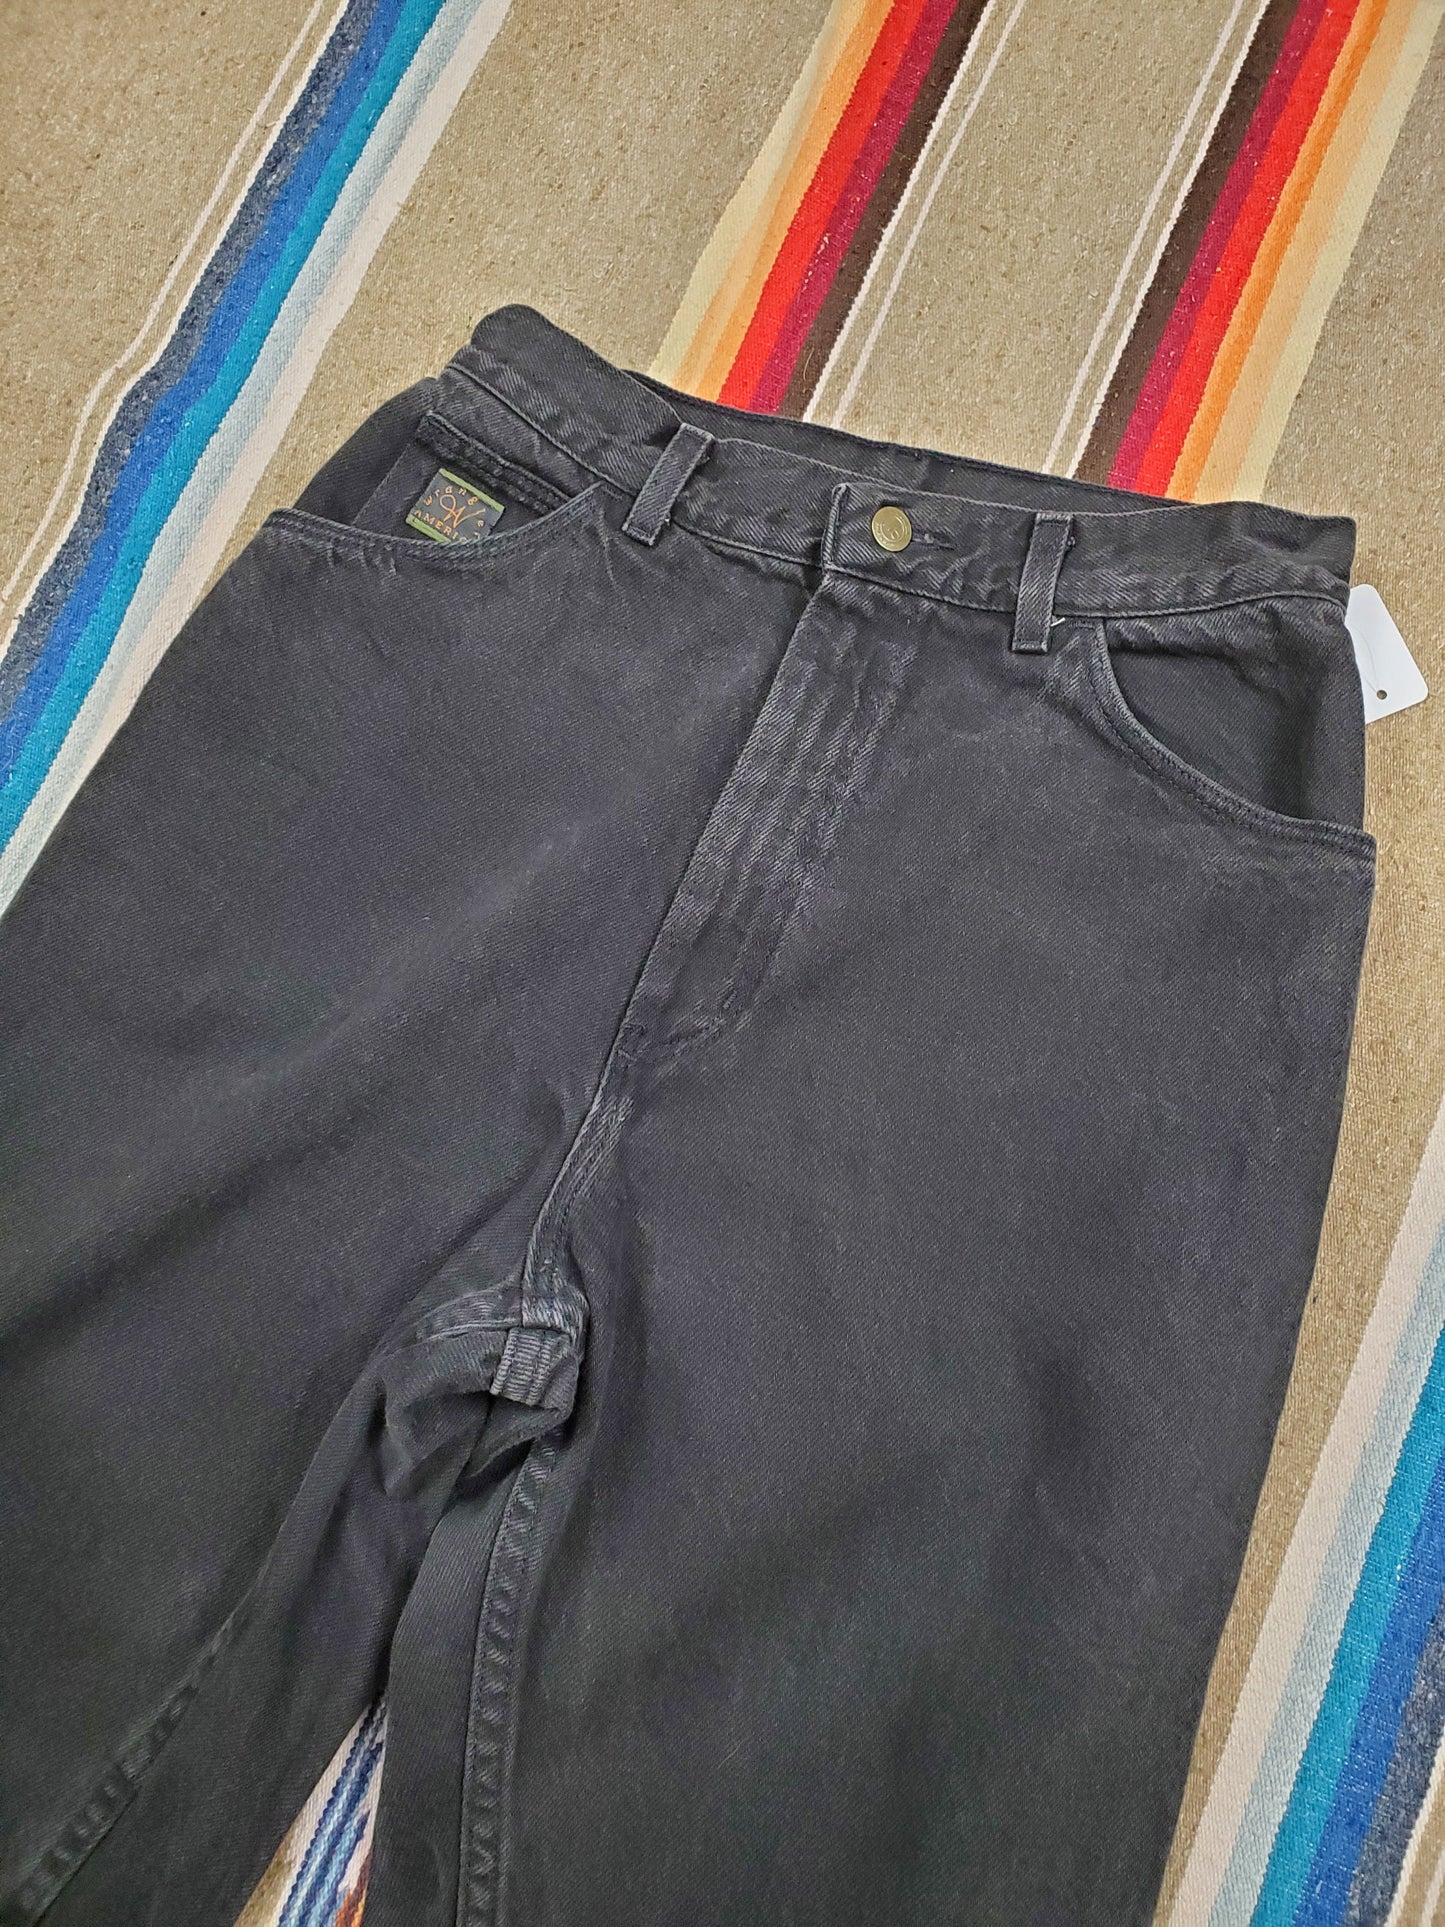 1990s Wrangler Black Denim Jeans Made in USA Size 28x30.5